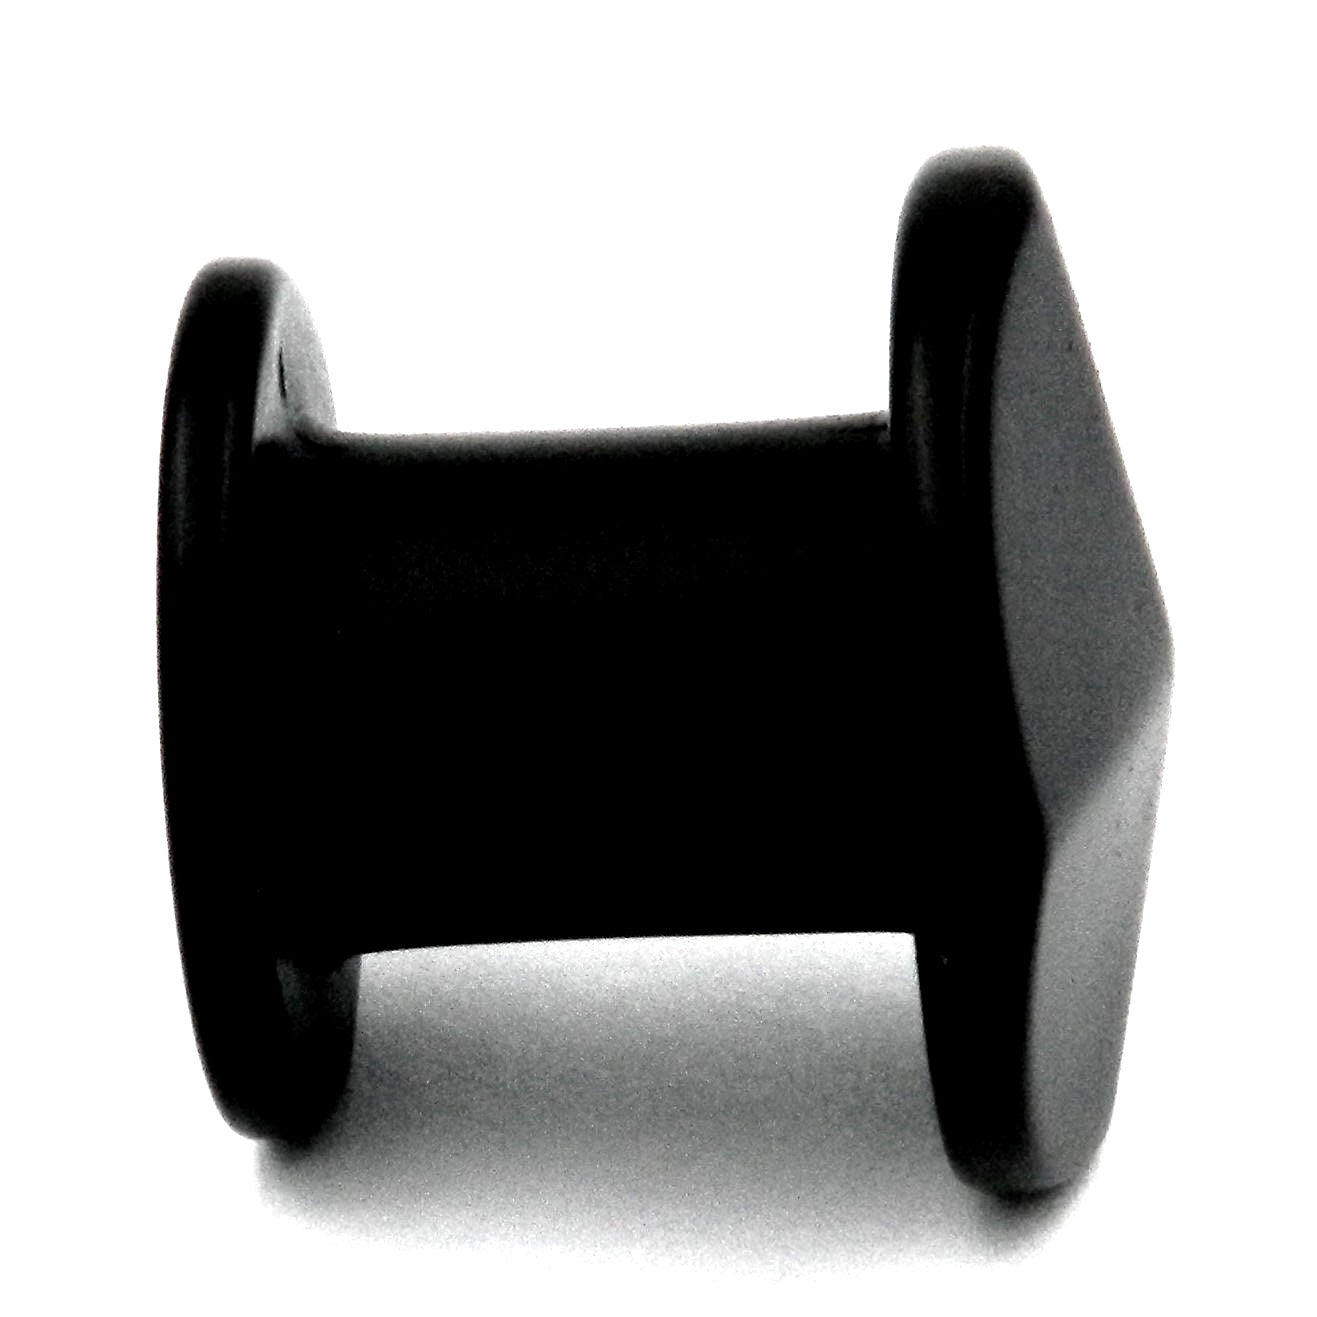 Paquete de 10 perillas redondas para gabinete de Hickory Hardware Corinth de 1 3/16 ", color negro mate, P3184-MB